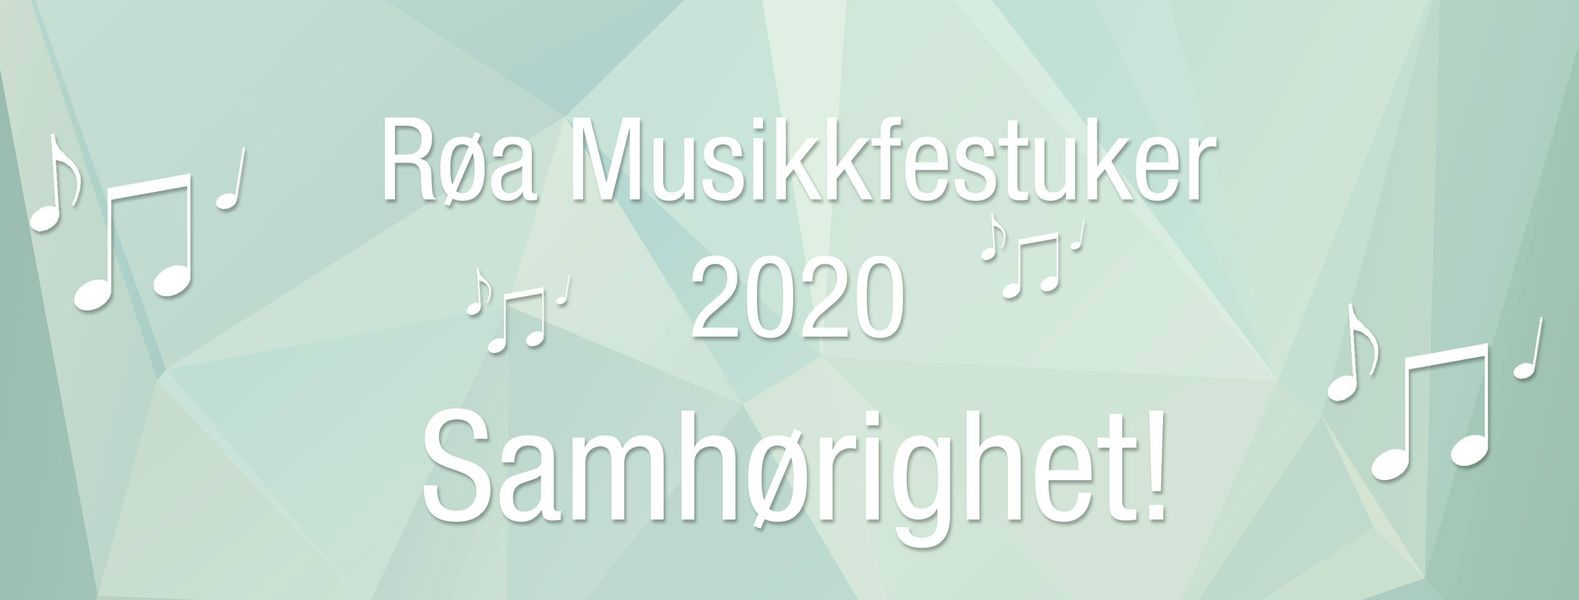 Røa musikkfestuker 2020.jpg